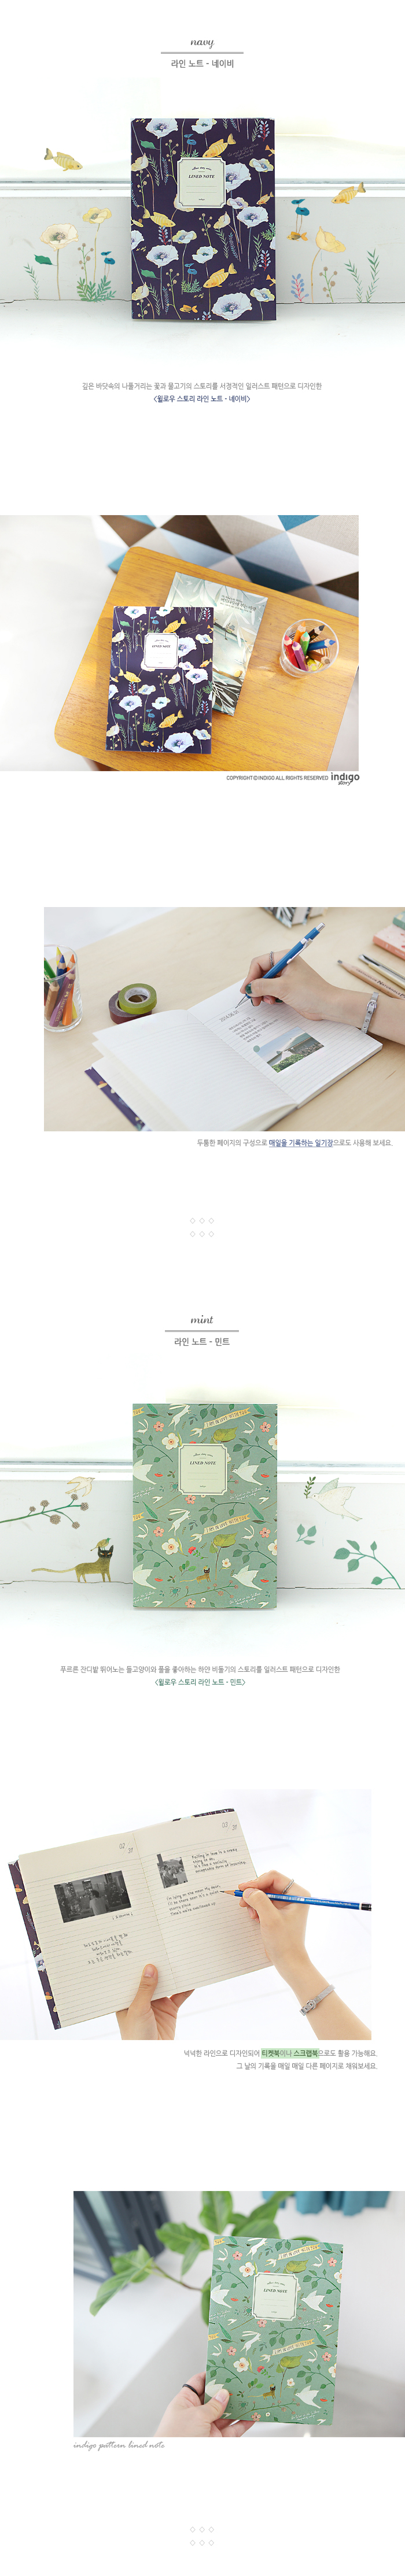 beautiful stationery notebook [beautiful stationery, beautiful notebooks, beautiful notebook]